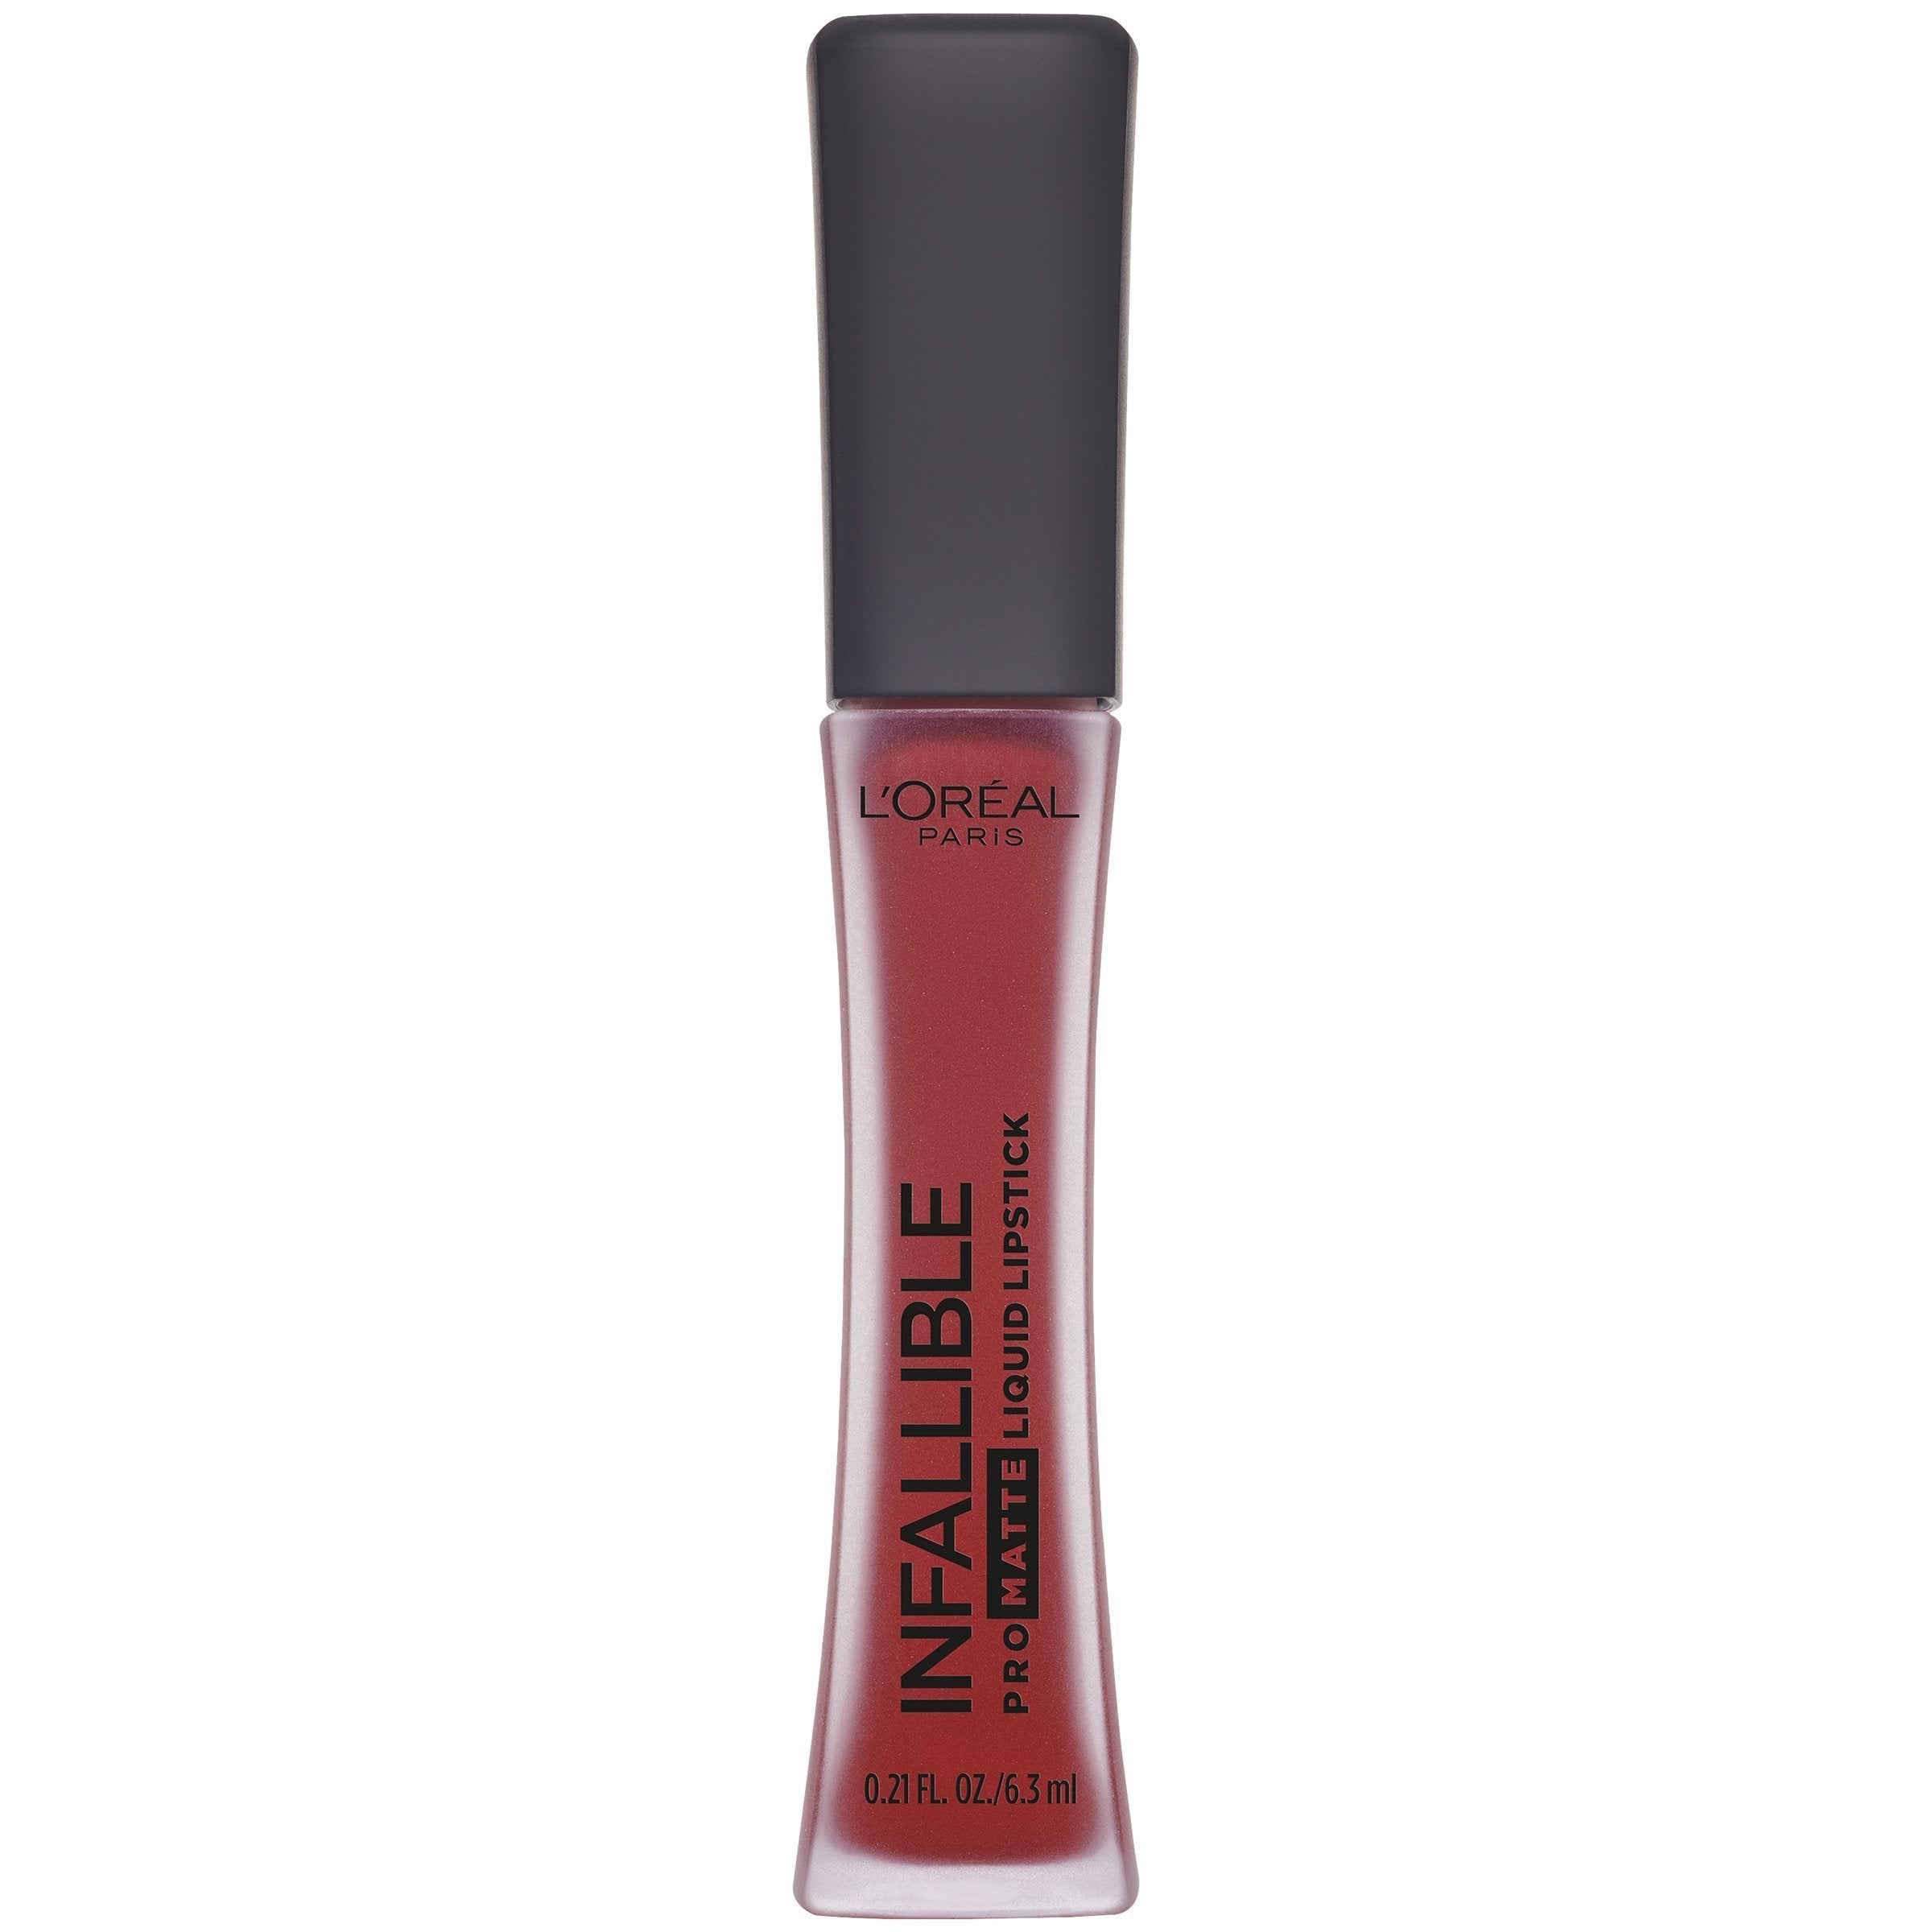 L'Oreal Paris Infallible Pro-Matte Liquid Lipstick, Matador, 0.21 fl. oz.-CaribOnline